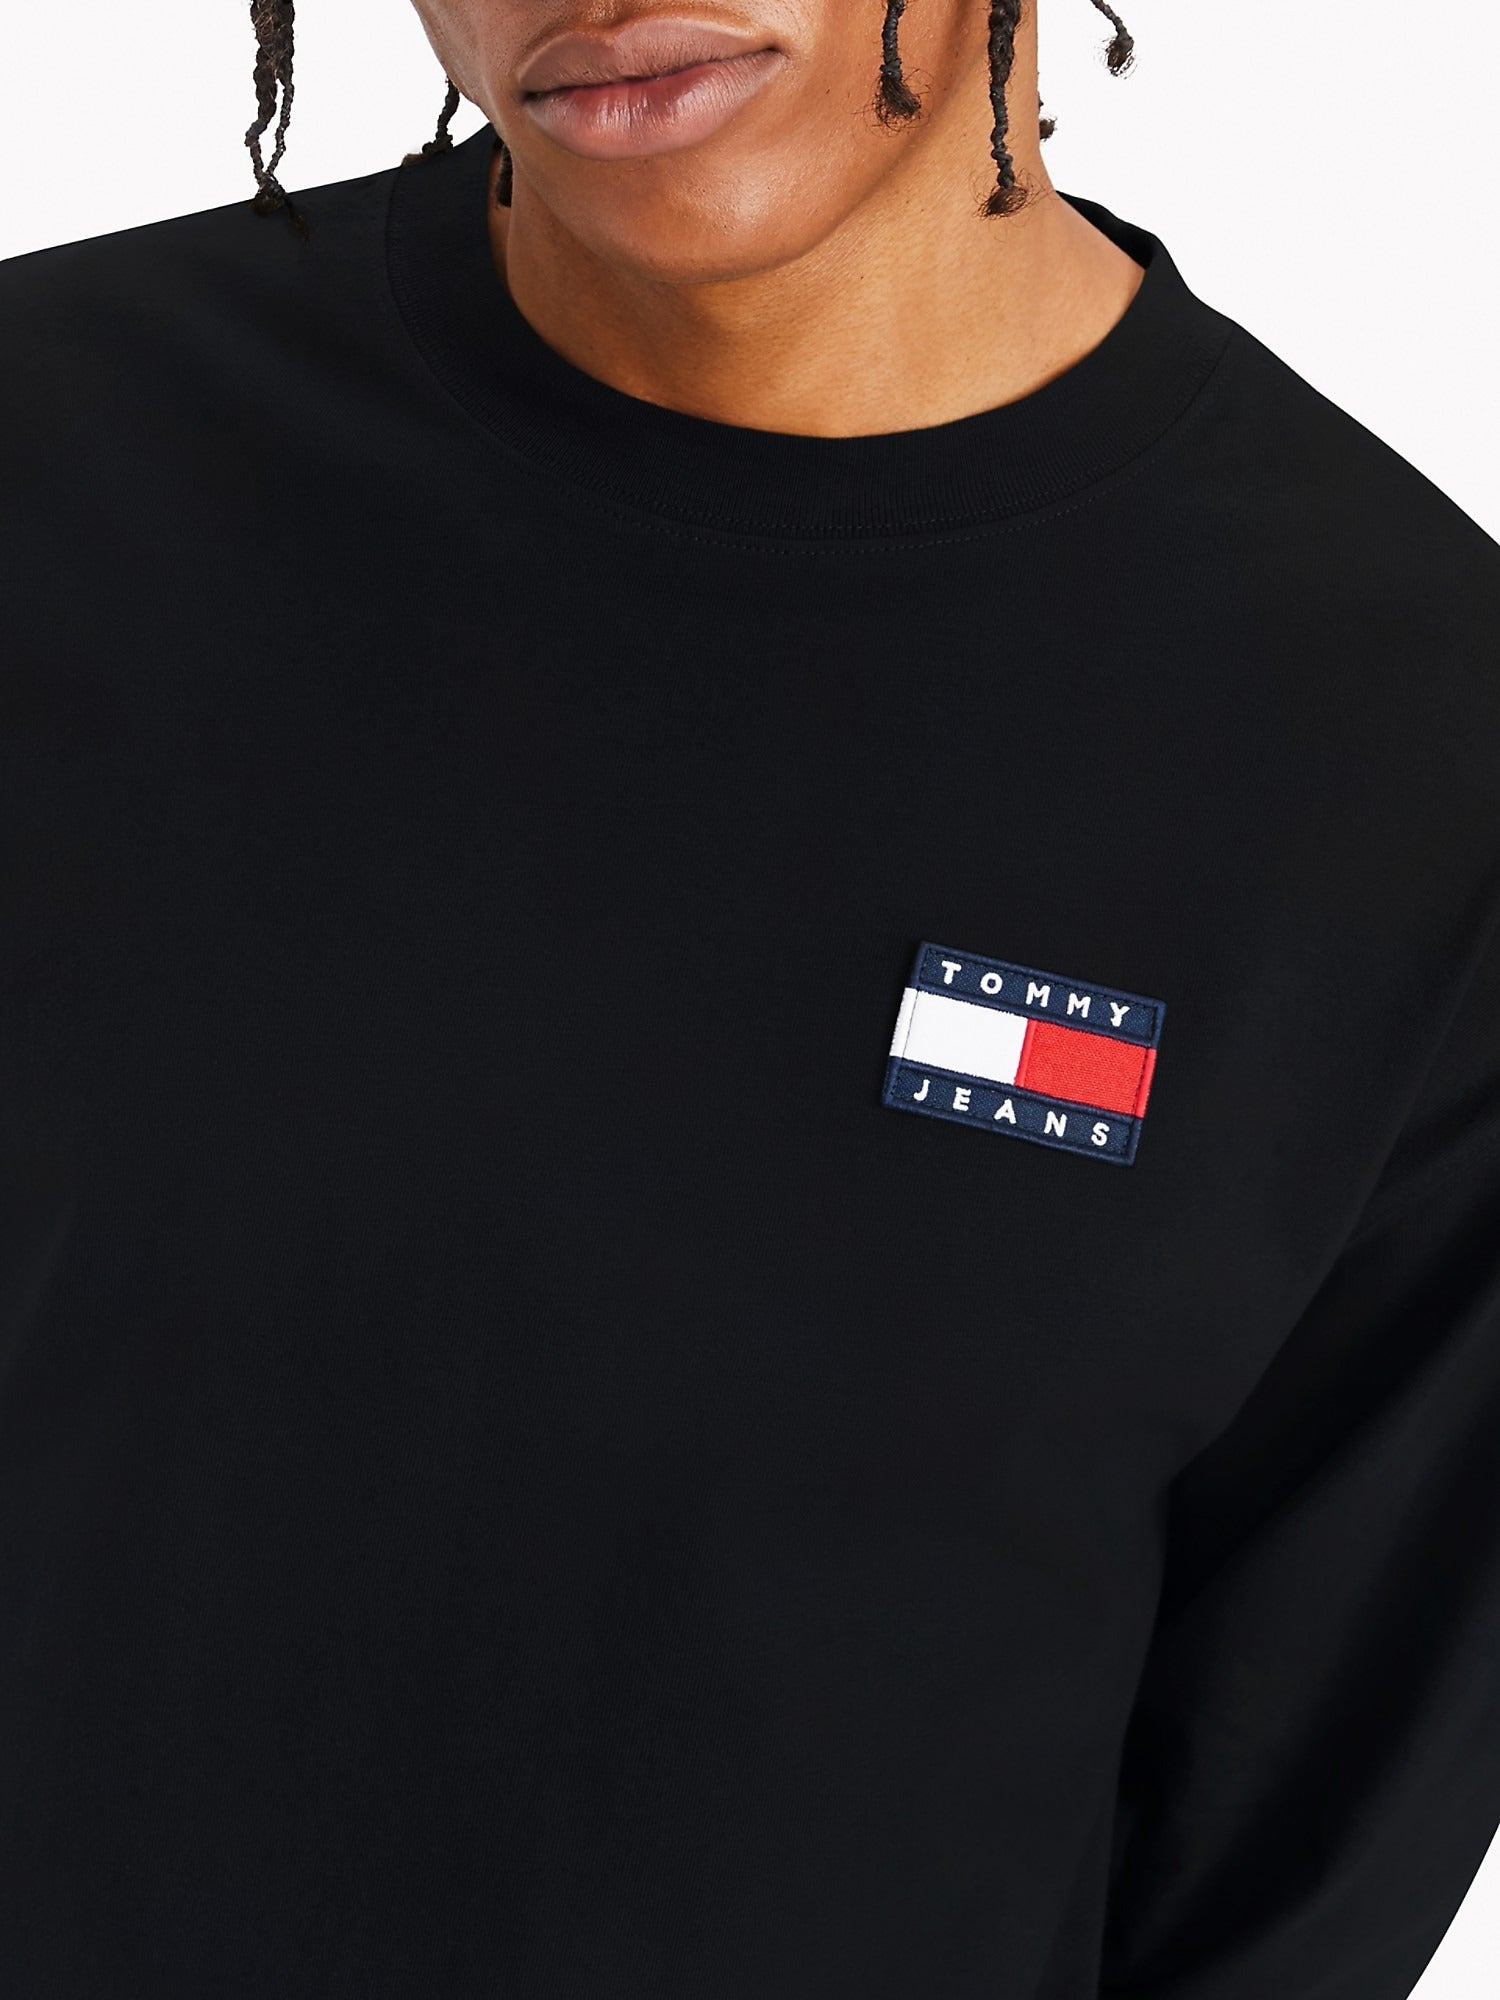 Tommy Hilfiger Mens Tommy Jeans Albie Badge Long Sleeve T-Shirt Jet Black 78J3708 001.